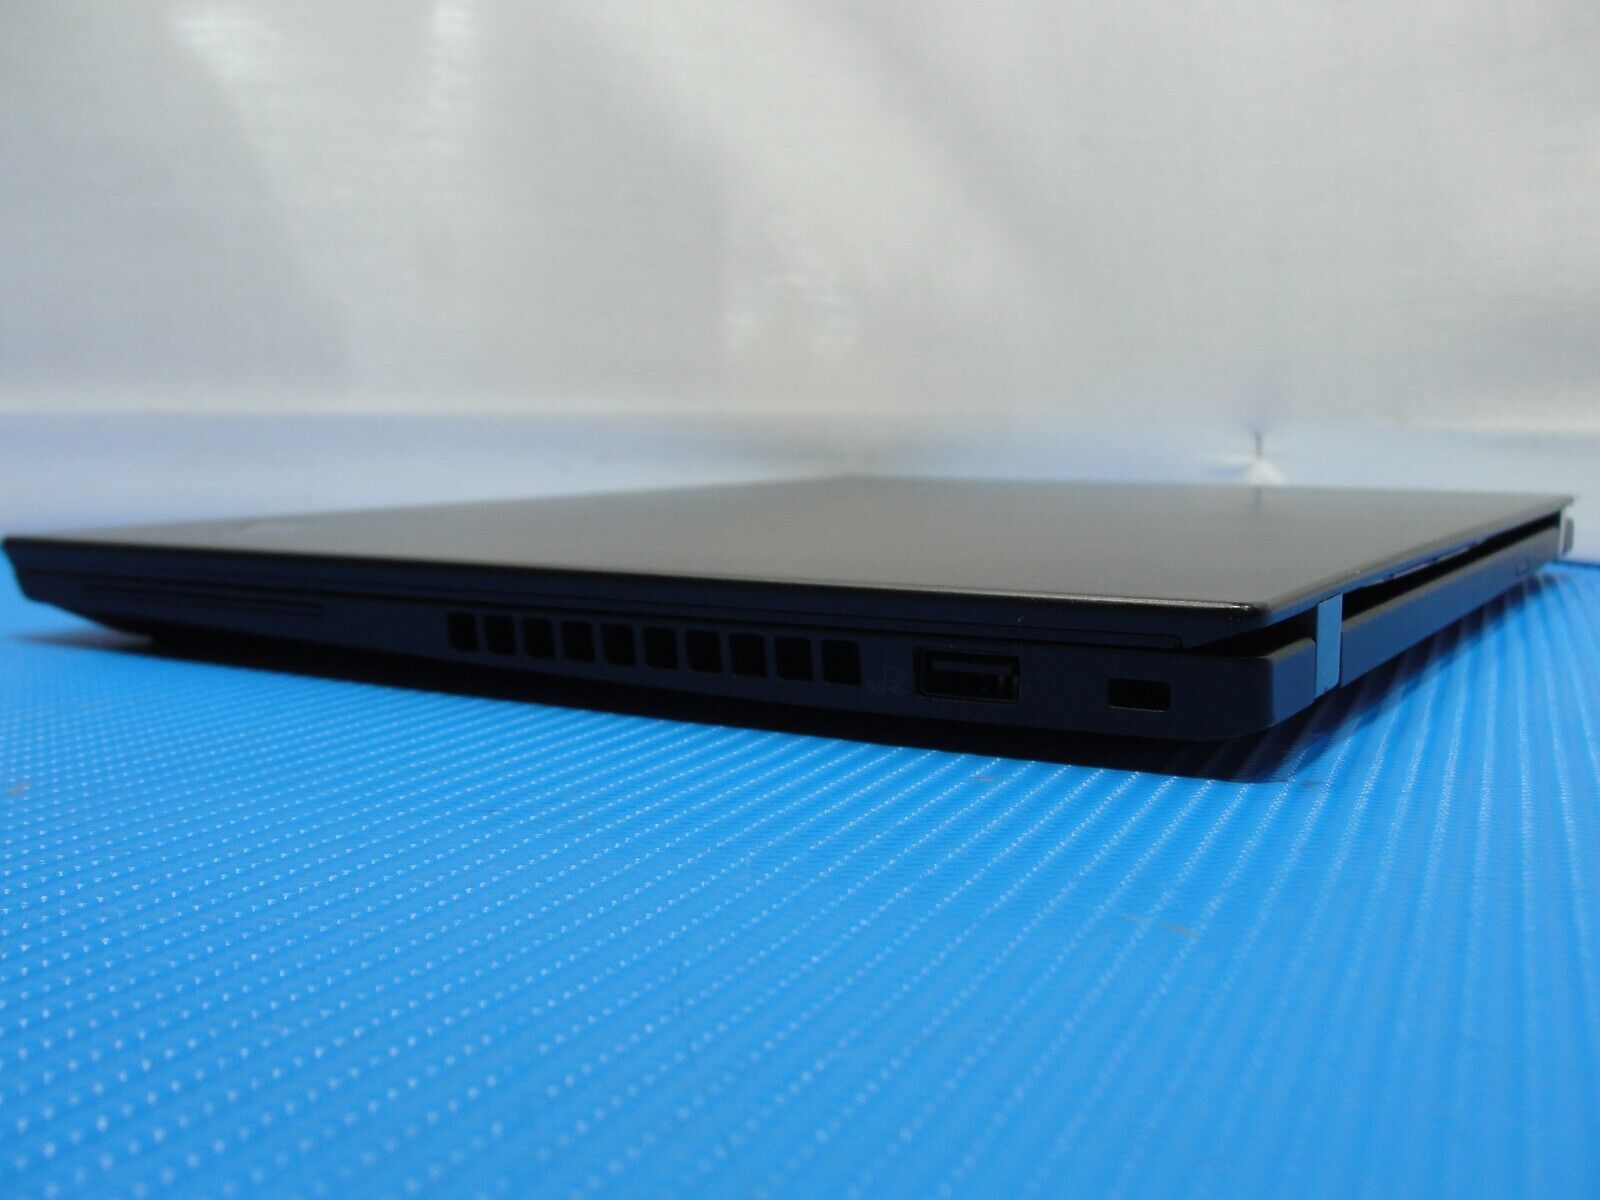 Lenovo ThinkPad X13 Gen 1 FHD TOUCH i7-10510U 512GB 99% Battery FPR WRTY